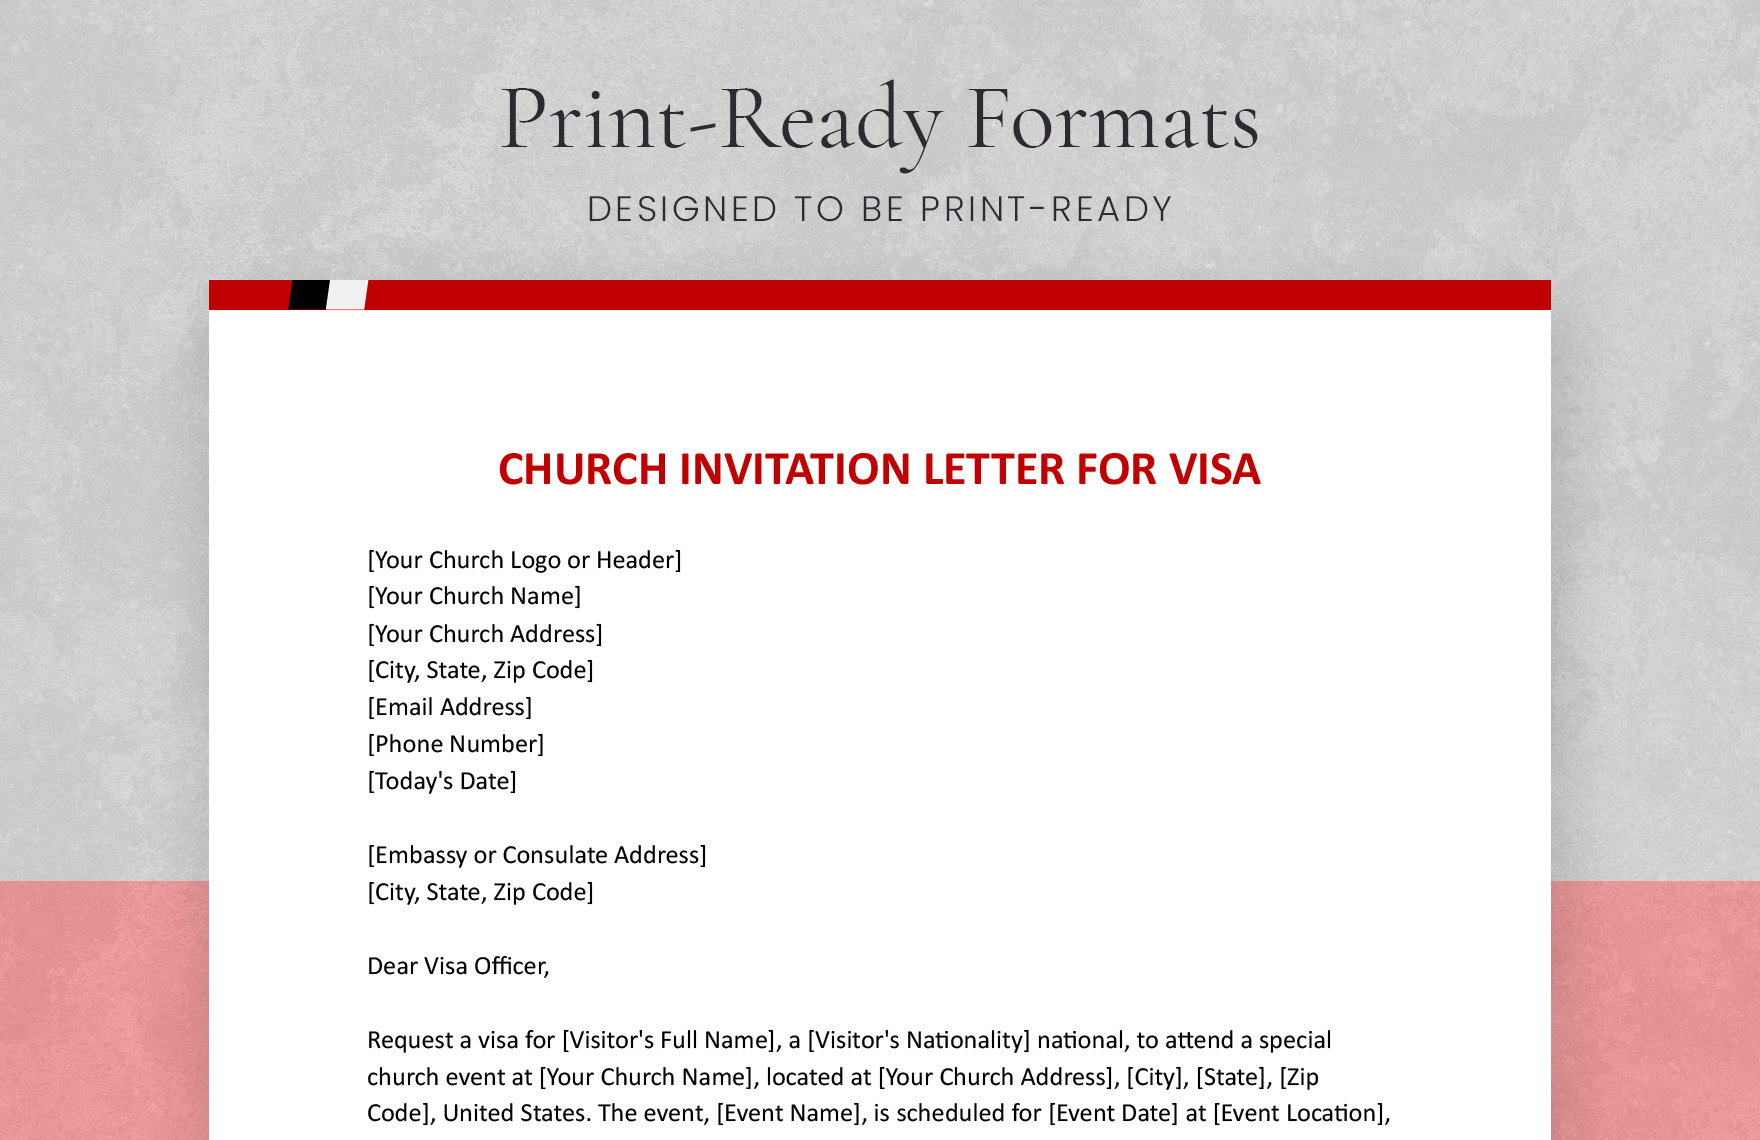 Church Invitation Letter For Visa